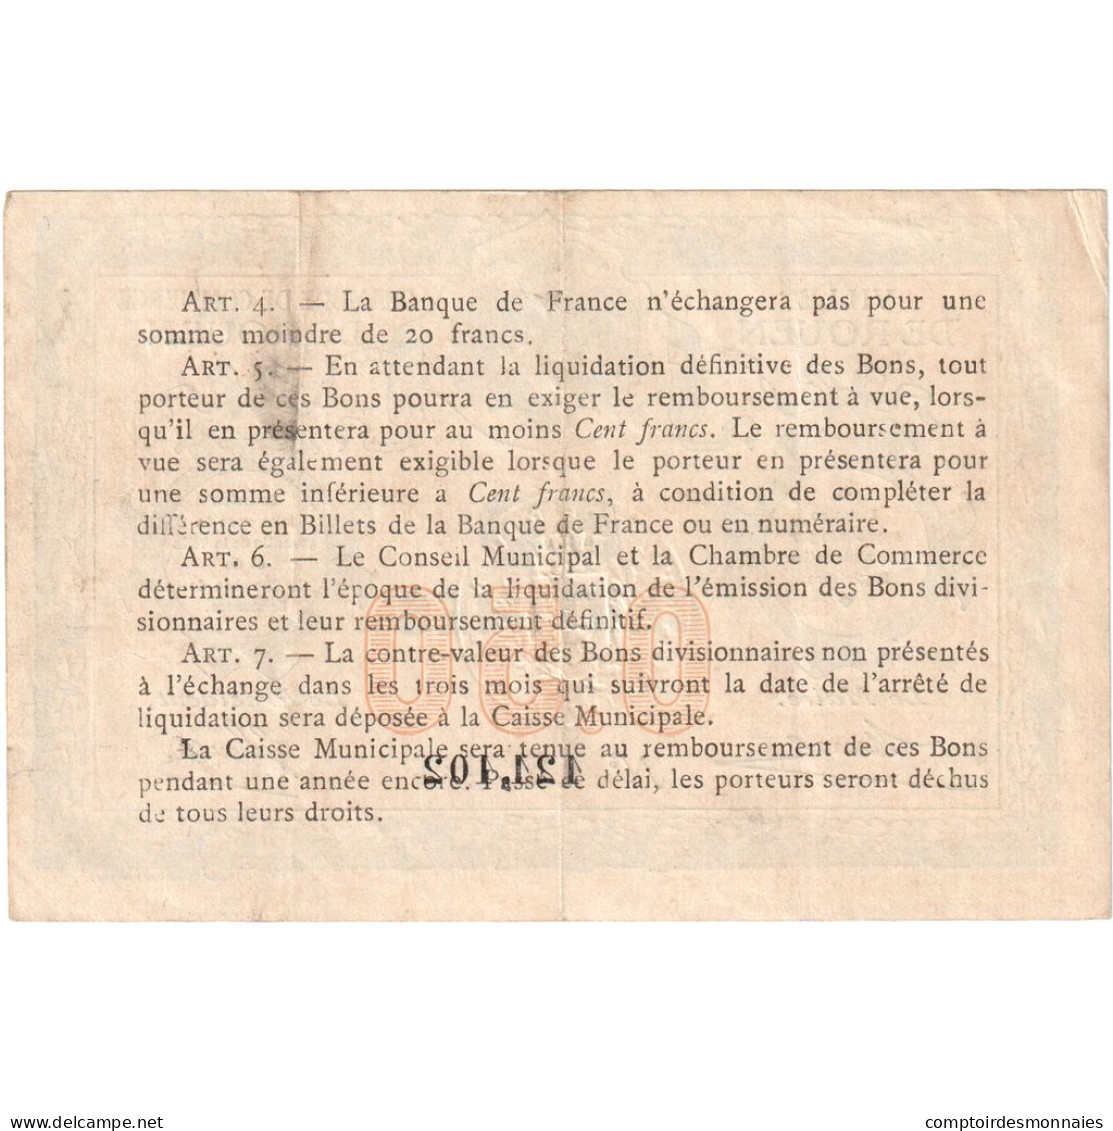 France, Rouen, 50 Centimes, 1916, Chambre De Commerce, TTB, Pirot:110-18 - Chambre De Commerce